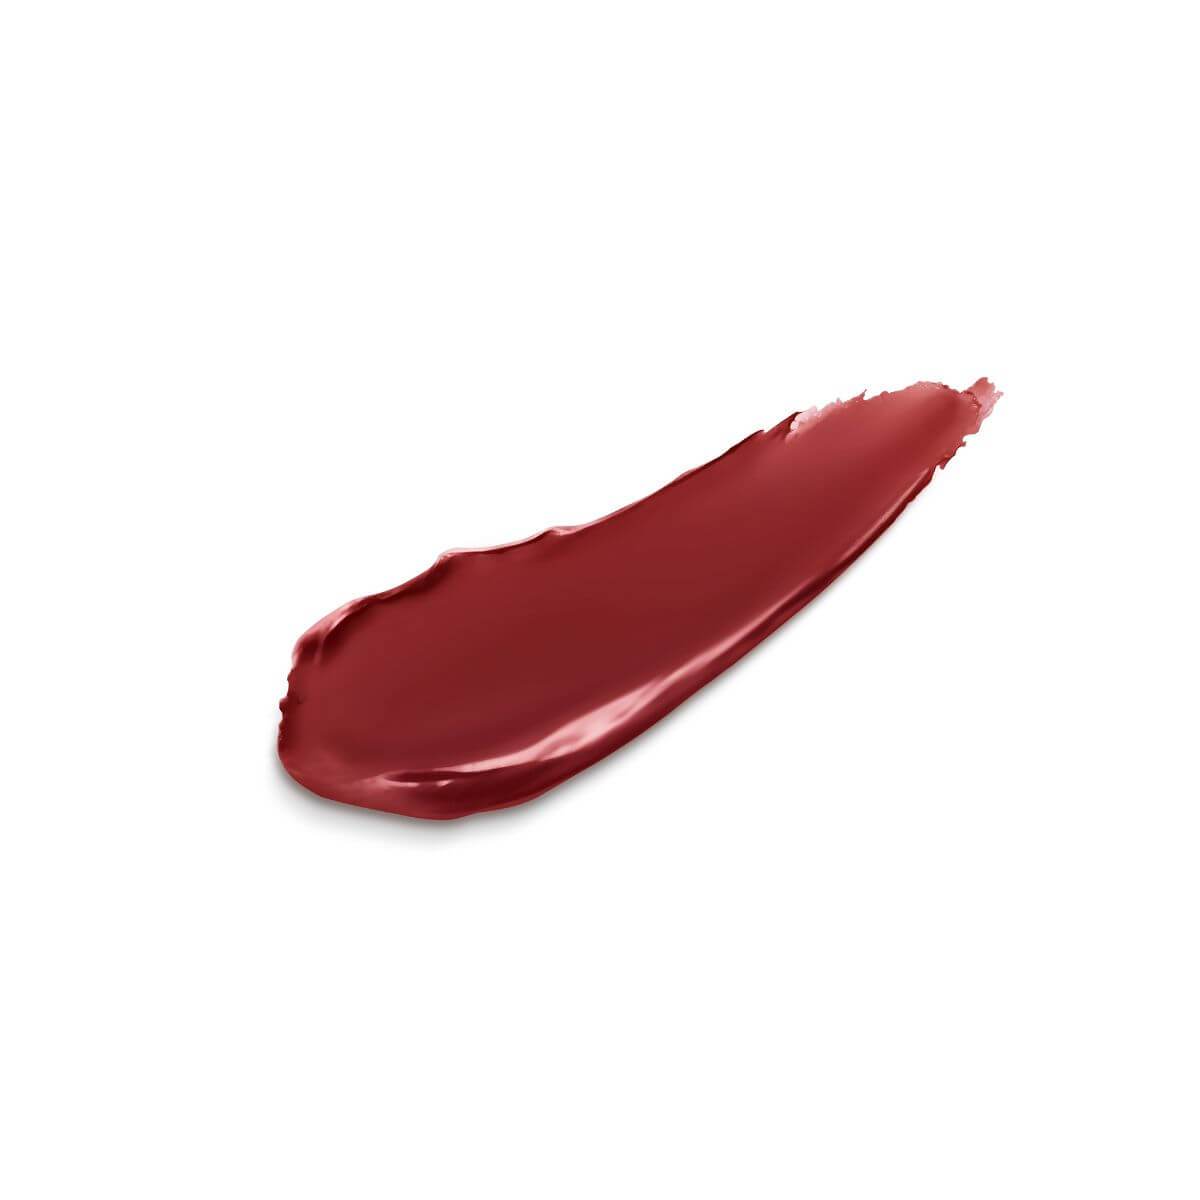 Unforgettable Lipstick Cream - Bloodroses